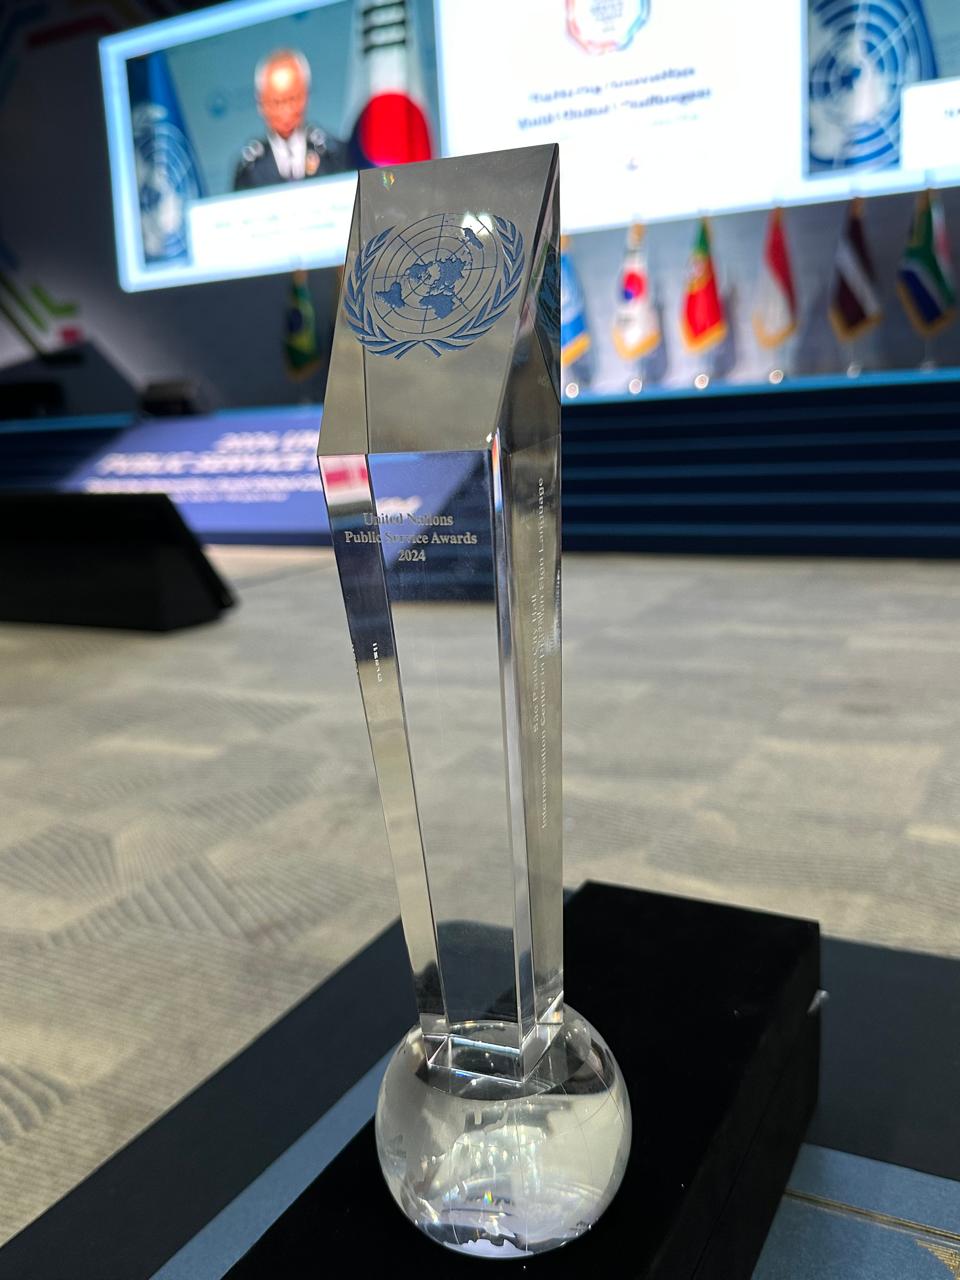 Prêmio recebido pela ONU. Ele tem um formato vertical, é de vidro e possui o logotipo da ONU.